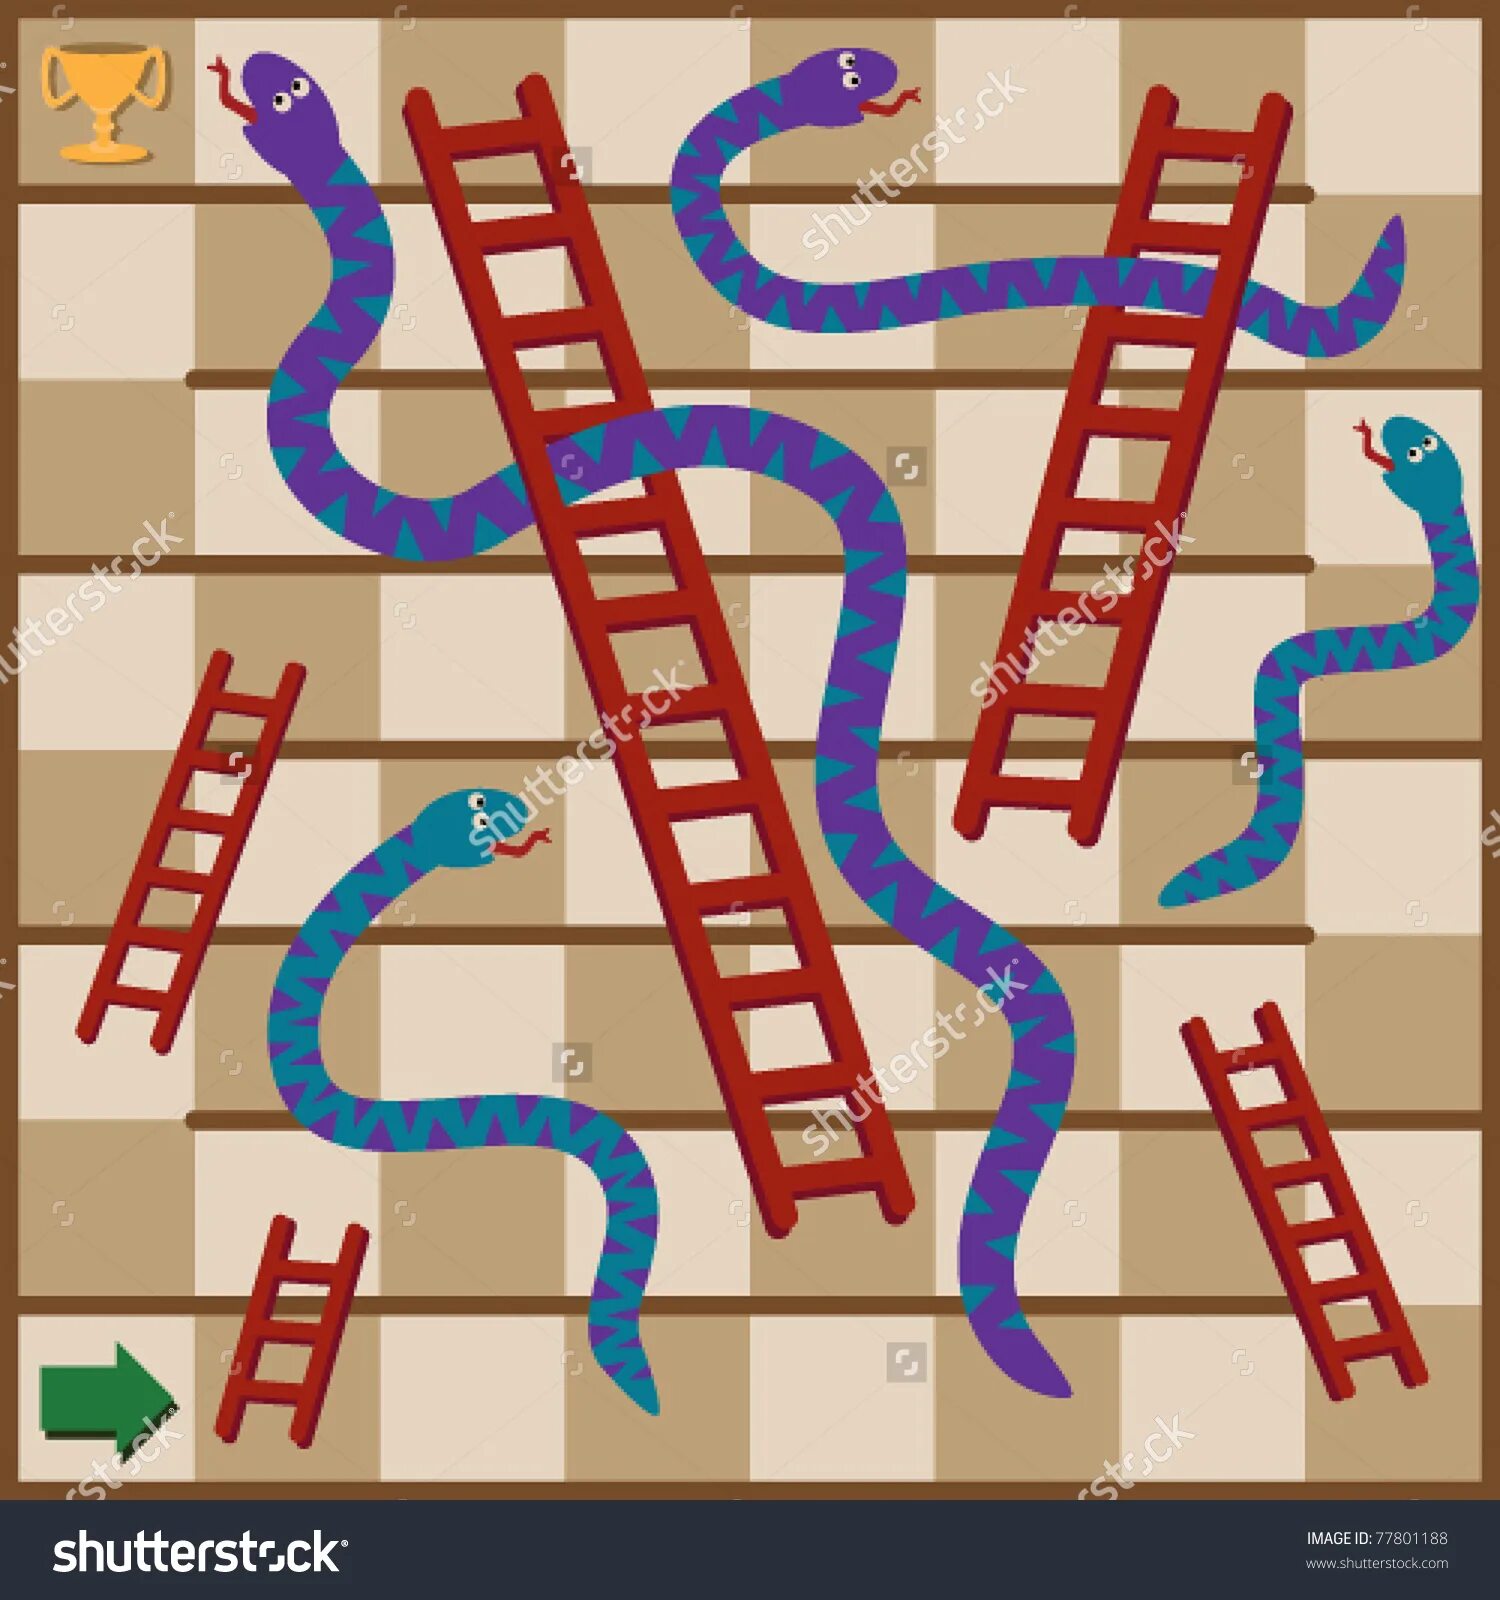 Правила змейки. Игра змеи и лестницы. Ходилка змеи и лестницы. Игра лесенки и змейки. Настольная игра змейка и лестница.